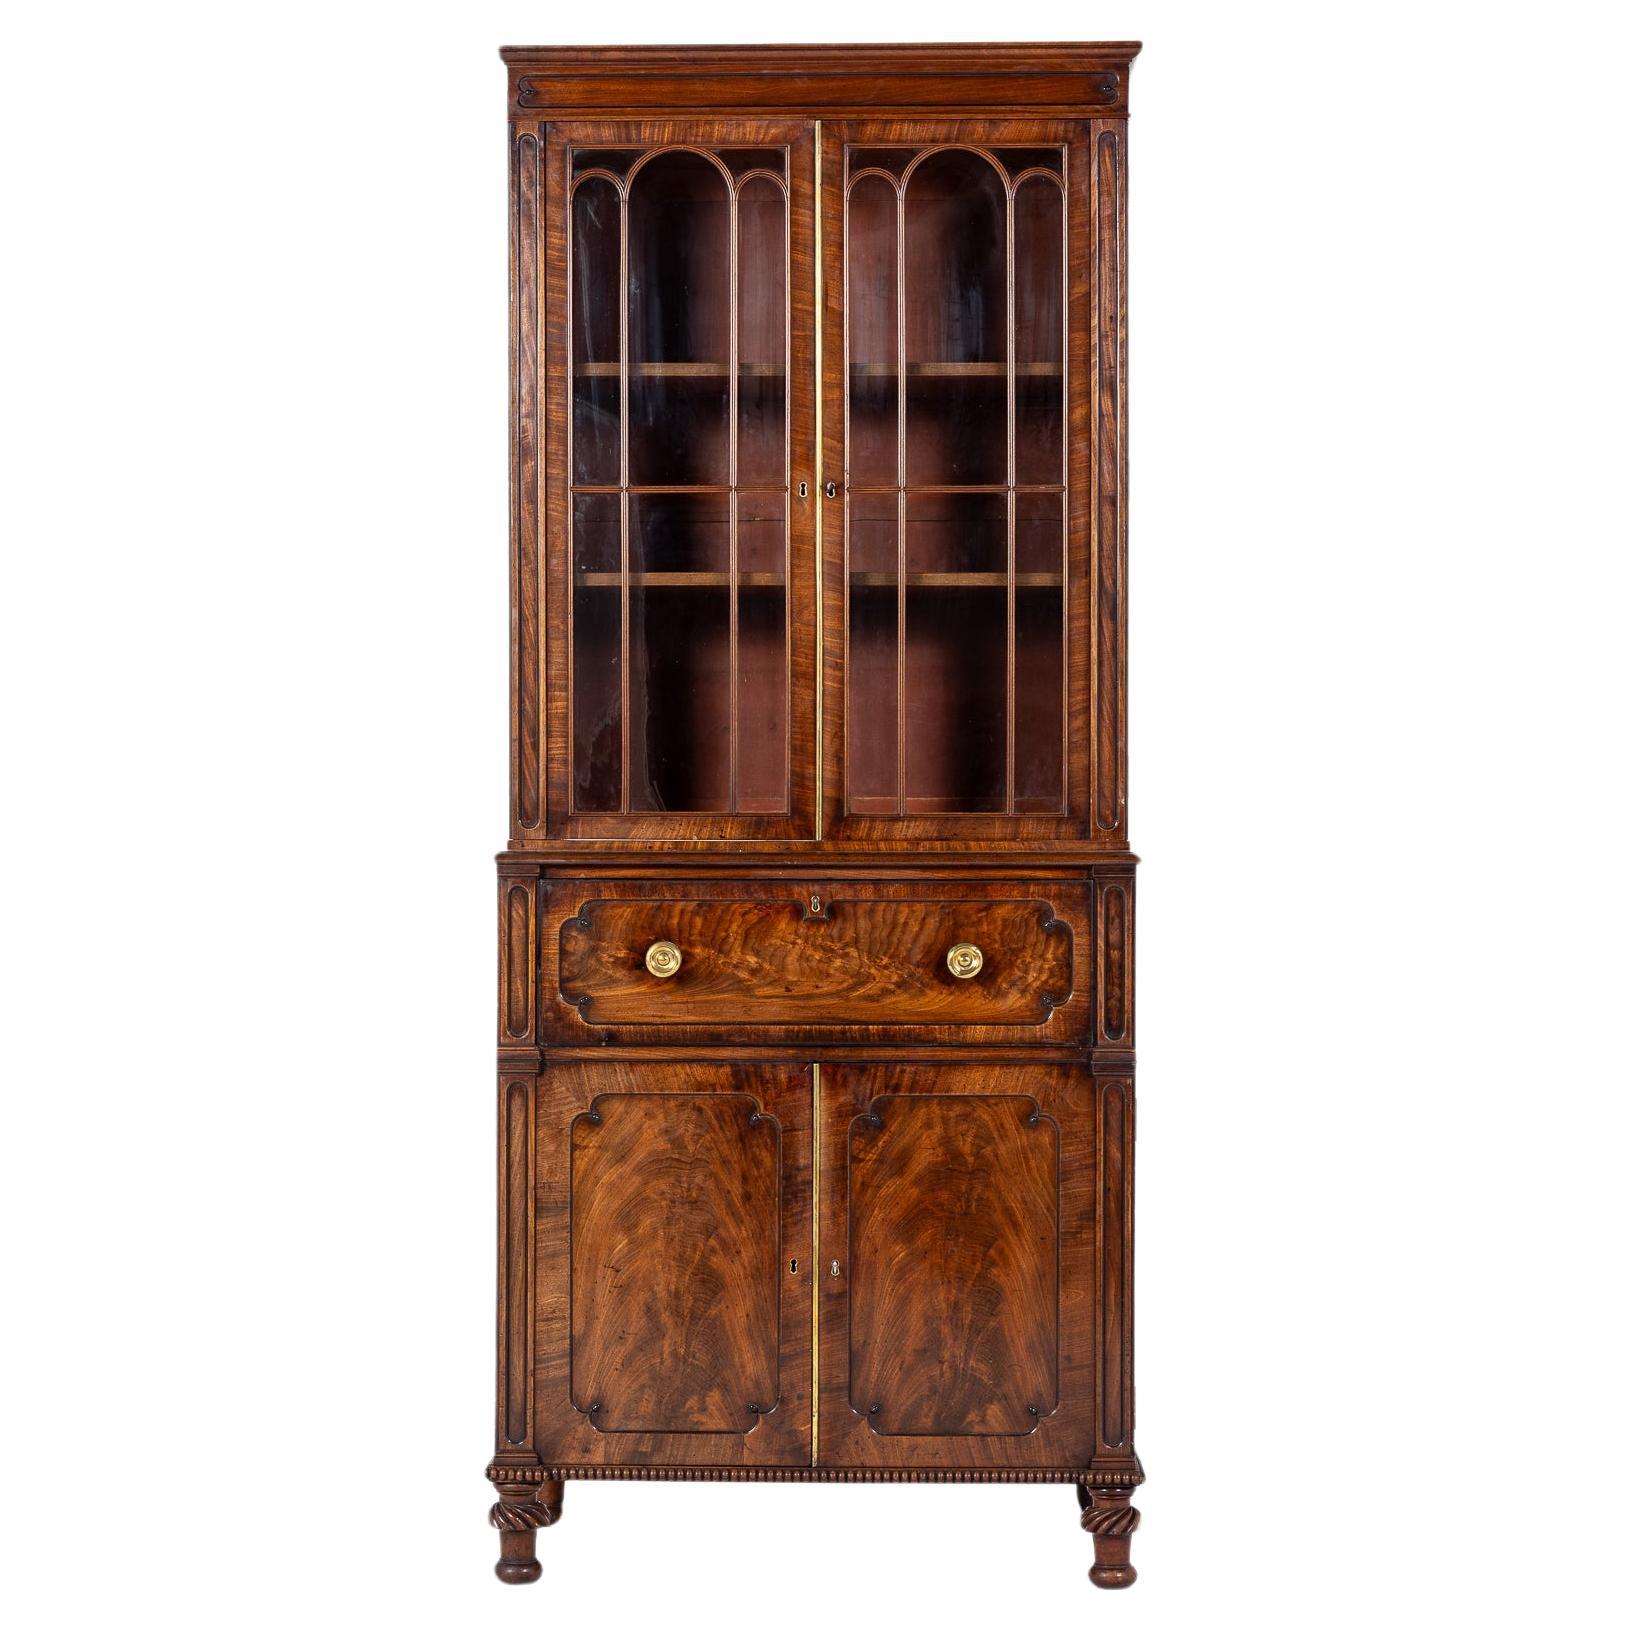 Late Regency Period Mahogany Secretaire Bookcase Circa 1825-30 For Sale